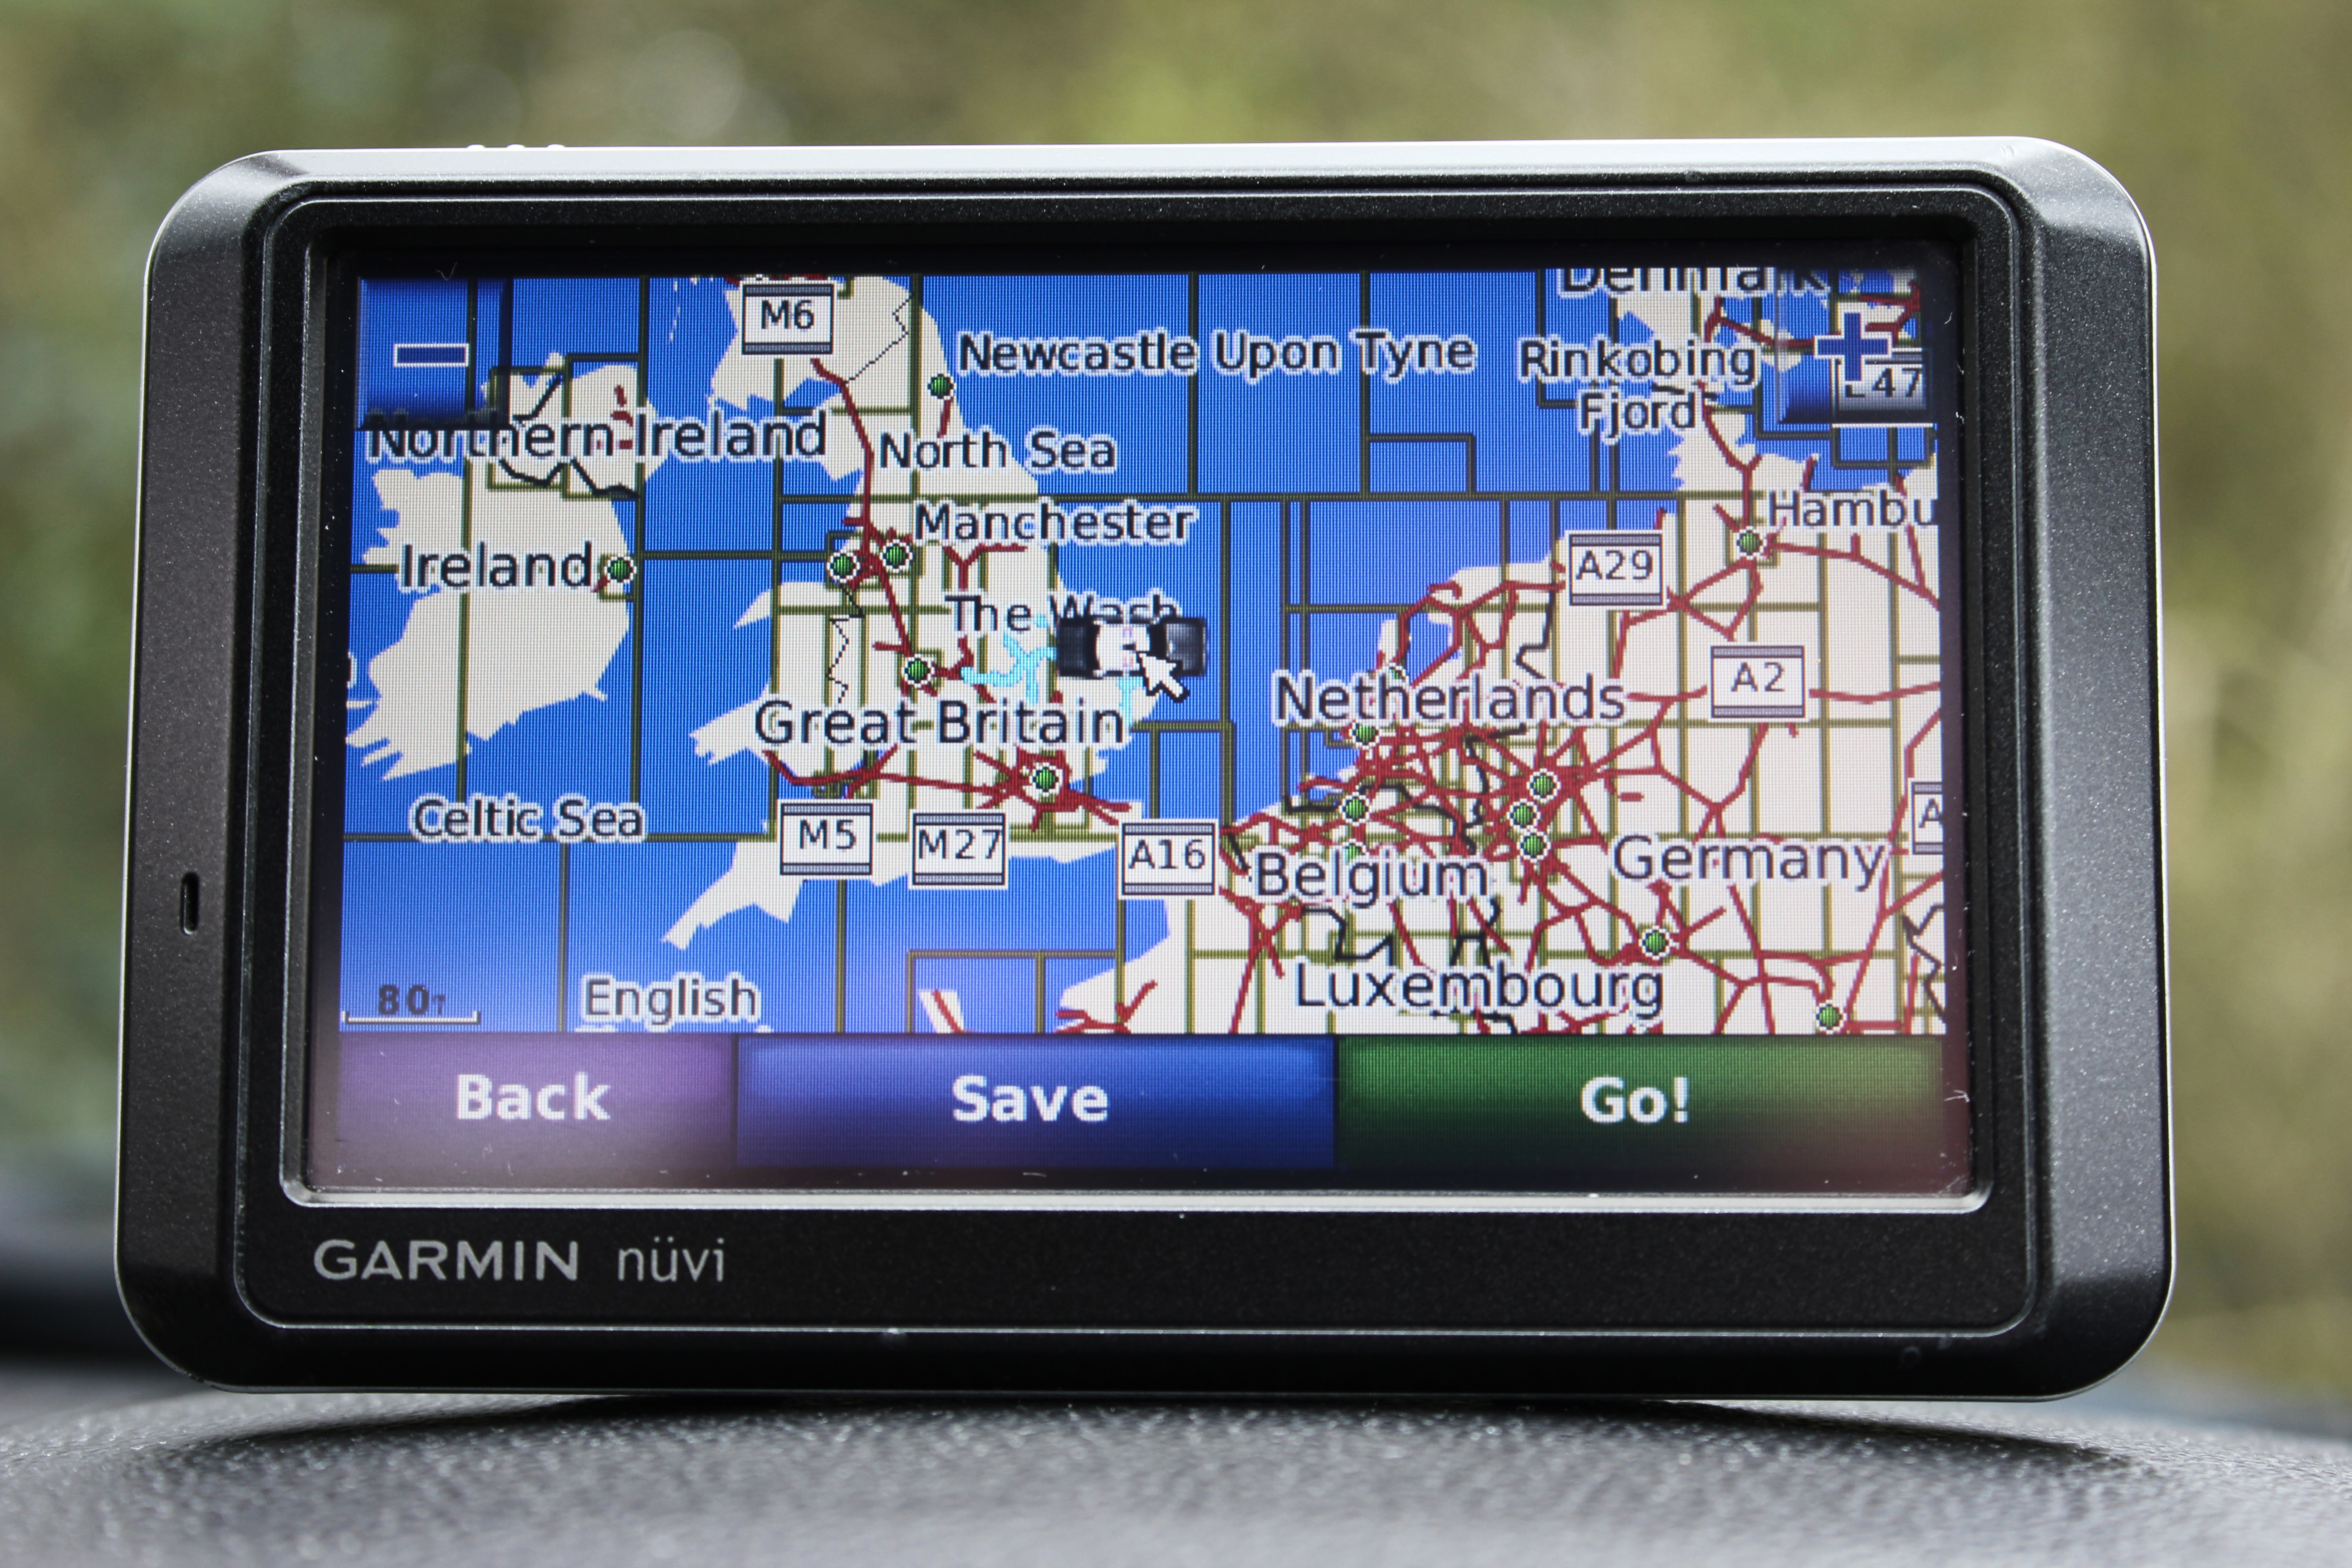 Foto mostrando um dispositivo GPS no centro dela, em um carro. O GPS está ligado e tem um mapa aparecendo.